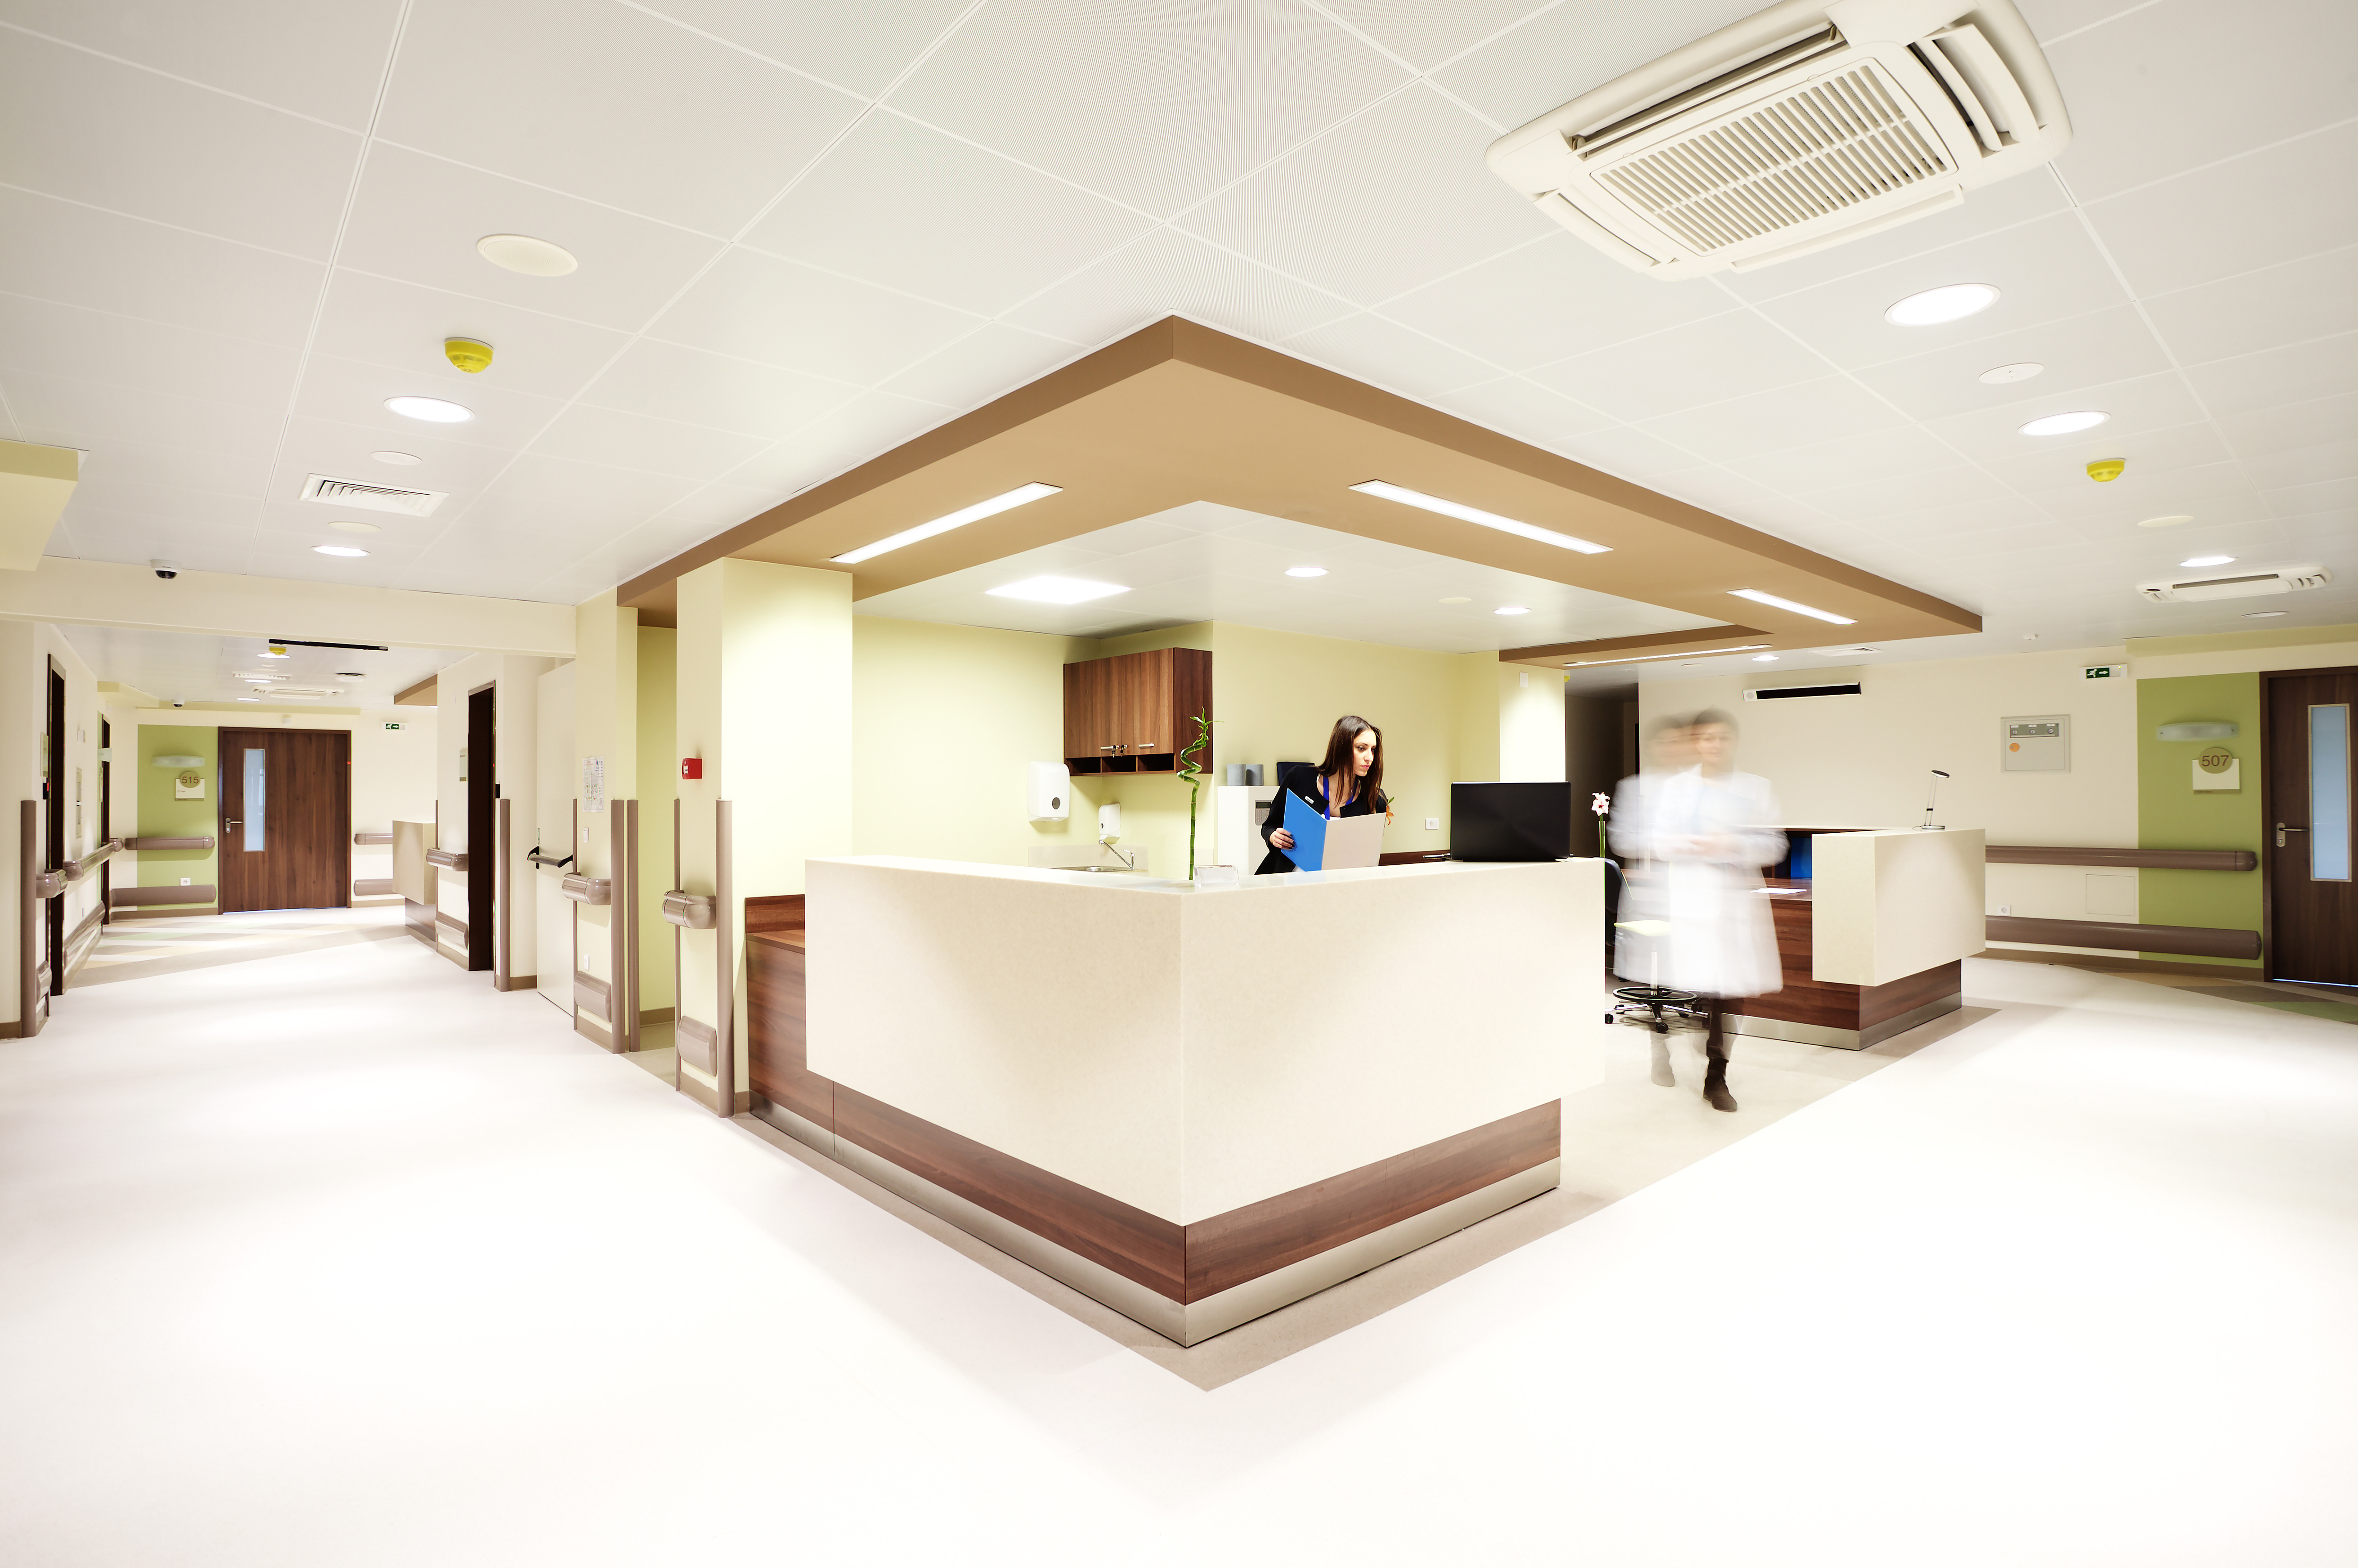 Recepción de un hospital | Fuente: Shutterstock